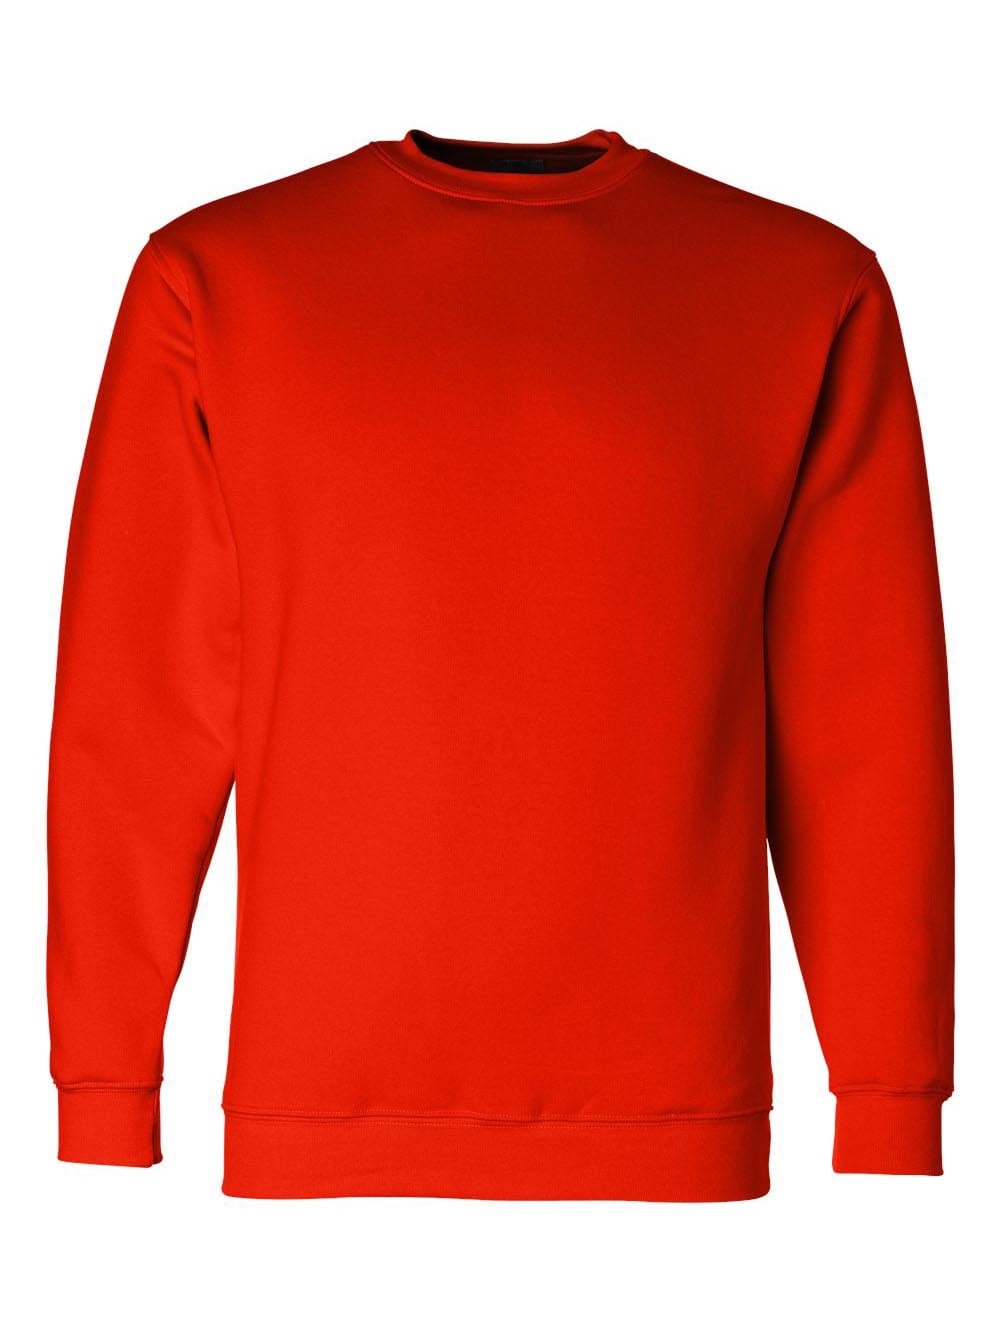 Bayside 1102 USA-Made Crewneck Sweatshirt